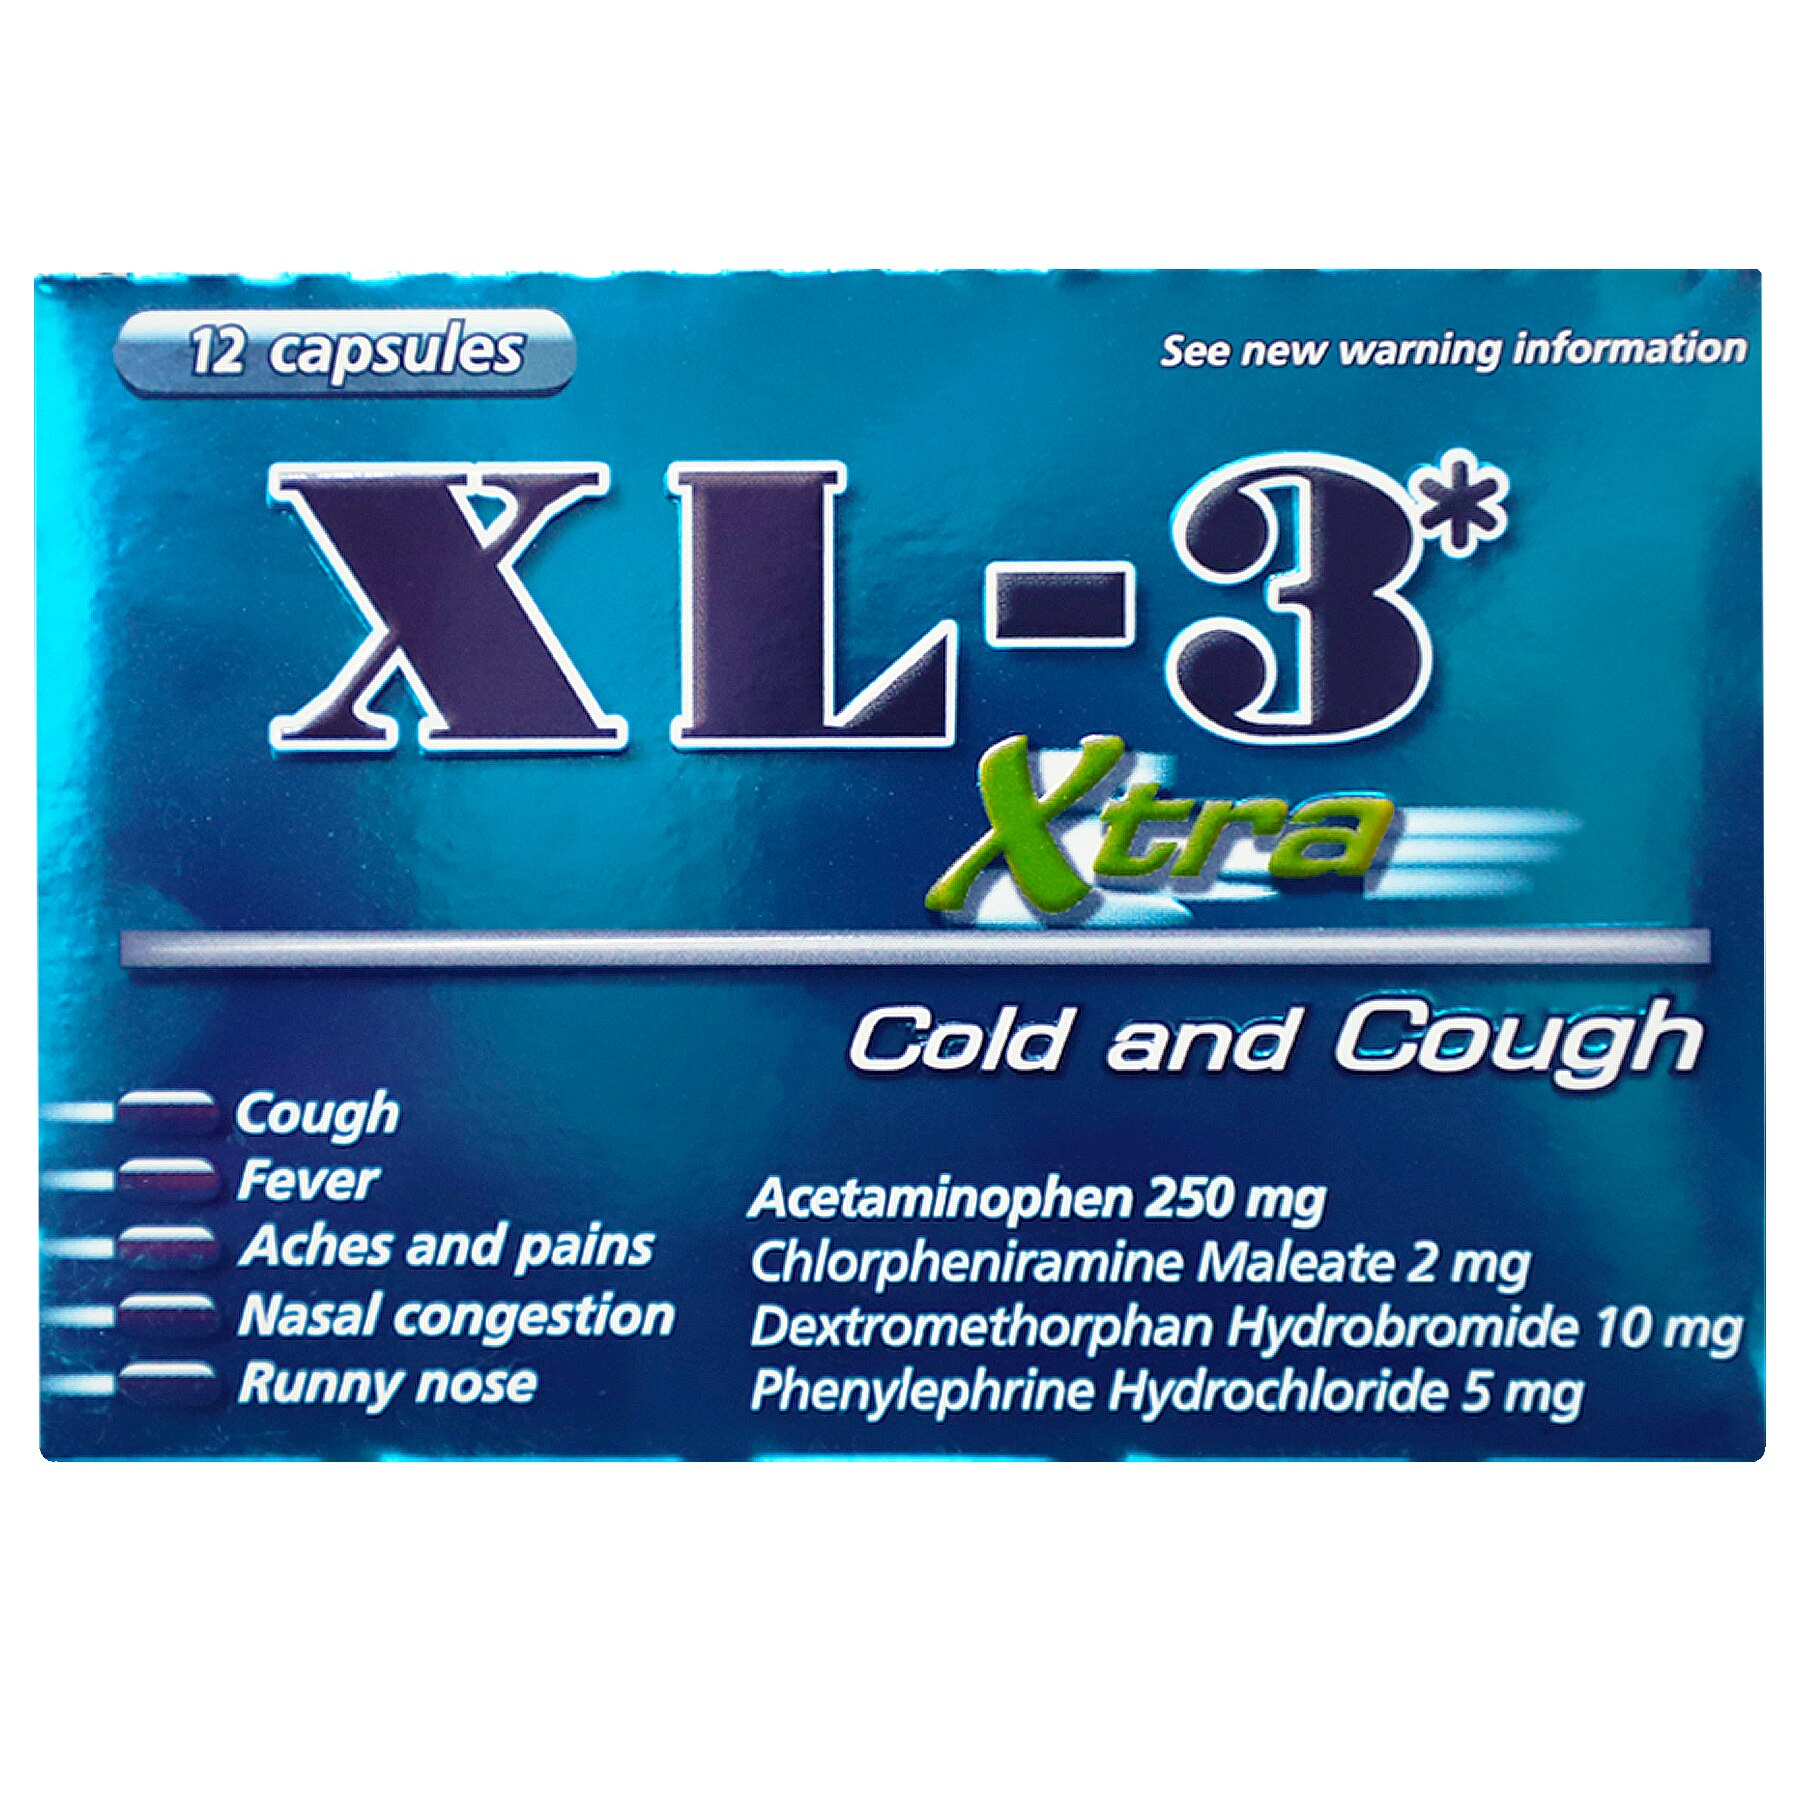 XL-3 Xtra Cough and Cold, 12 cápsulas